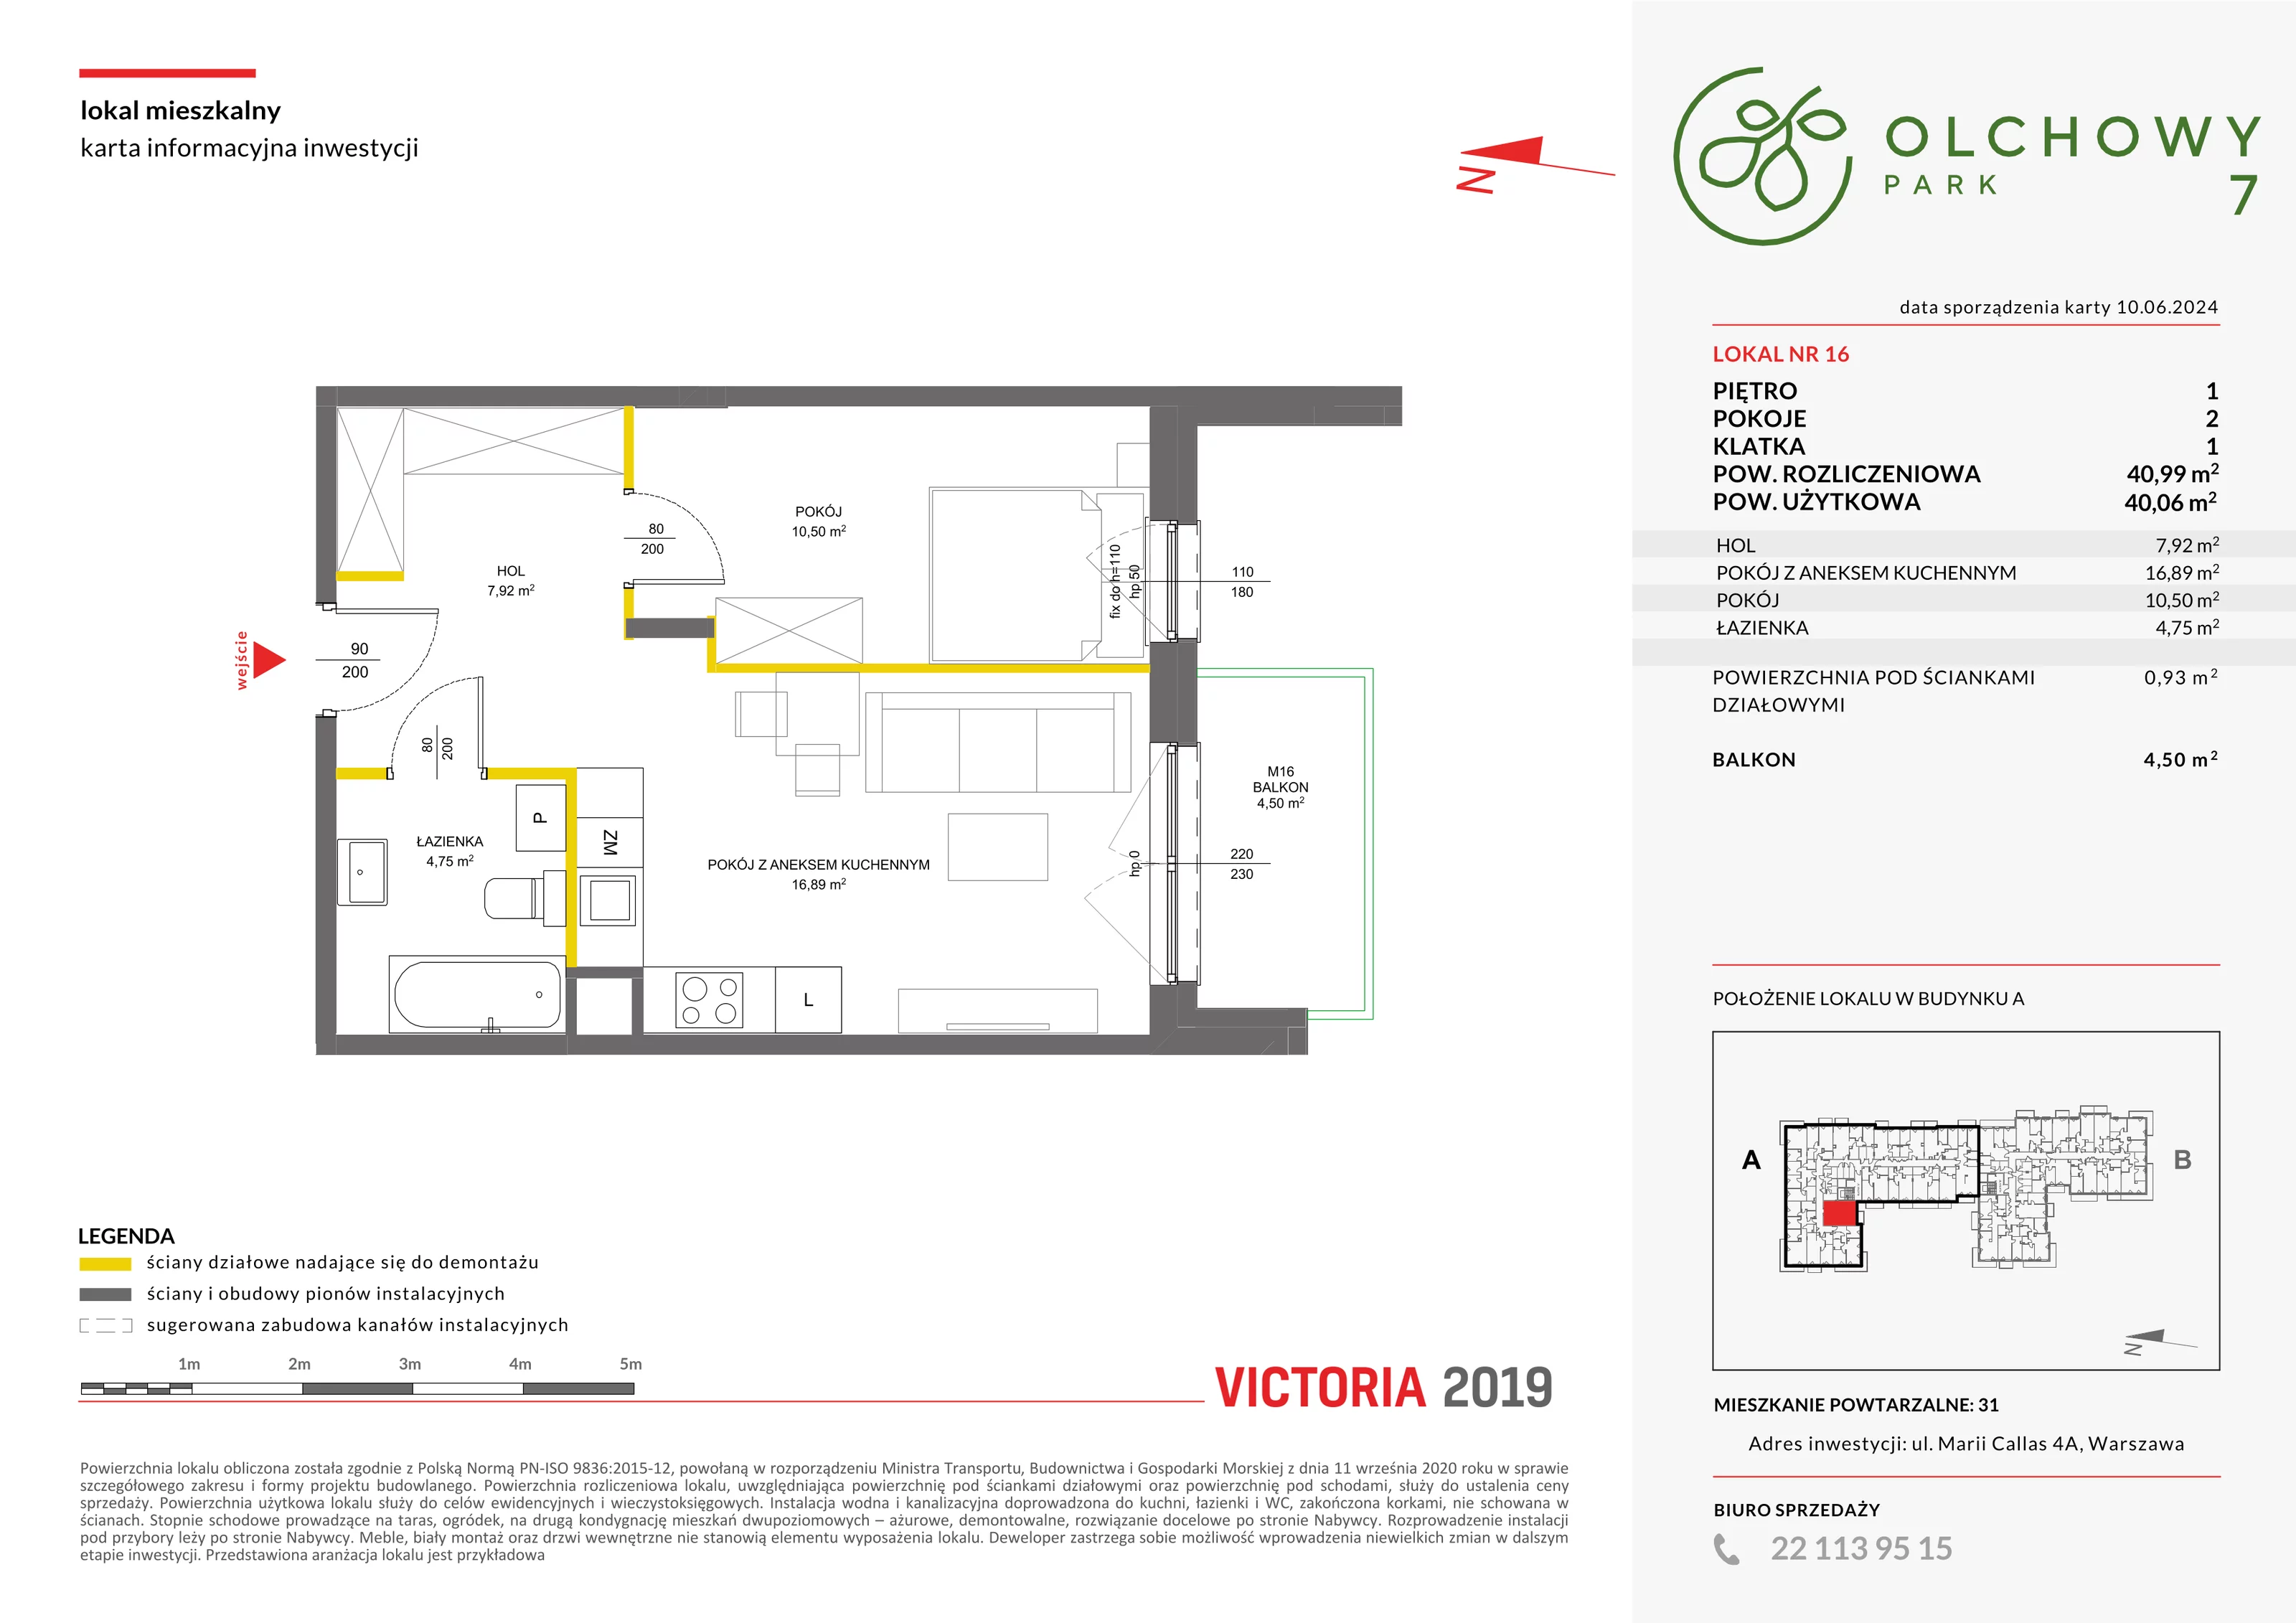 Mieszkanie 40,99 m², piętro 1, oferta nr VII/16, Olchowy Park 7, Warszawa, Białołęka, Kobiałka, ul. Marii Callas 4A